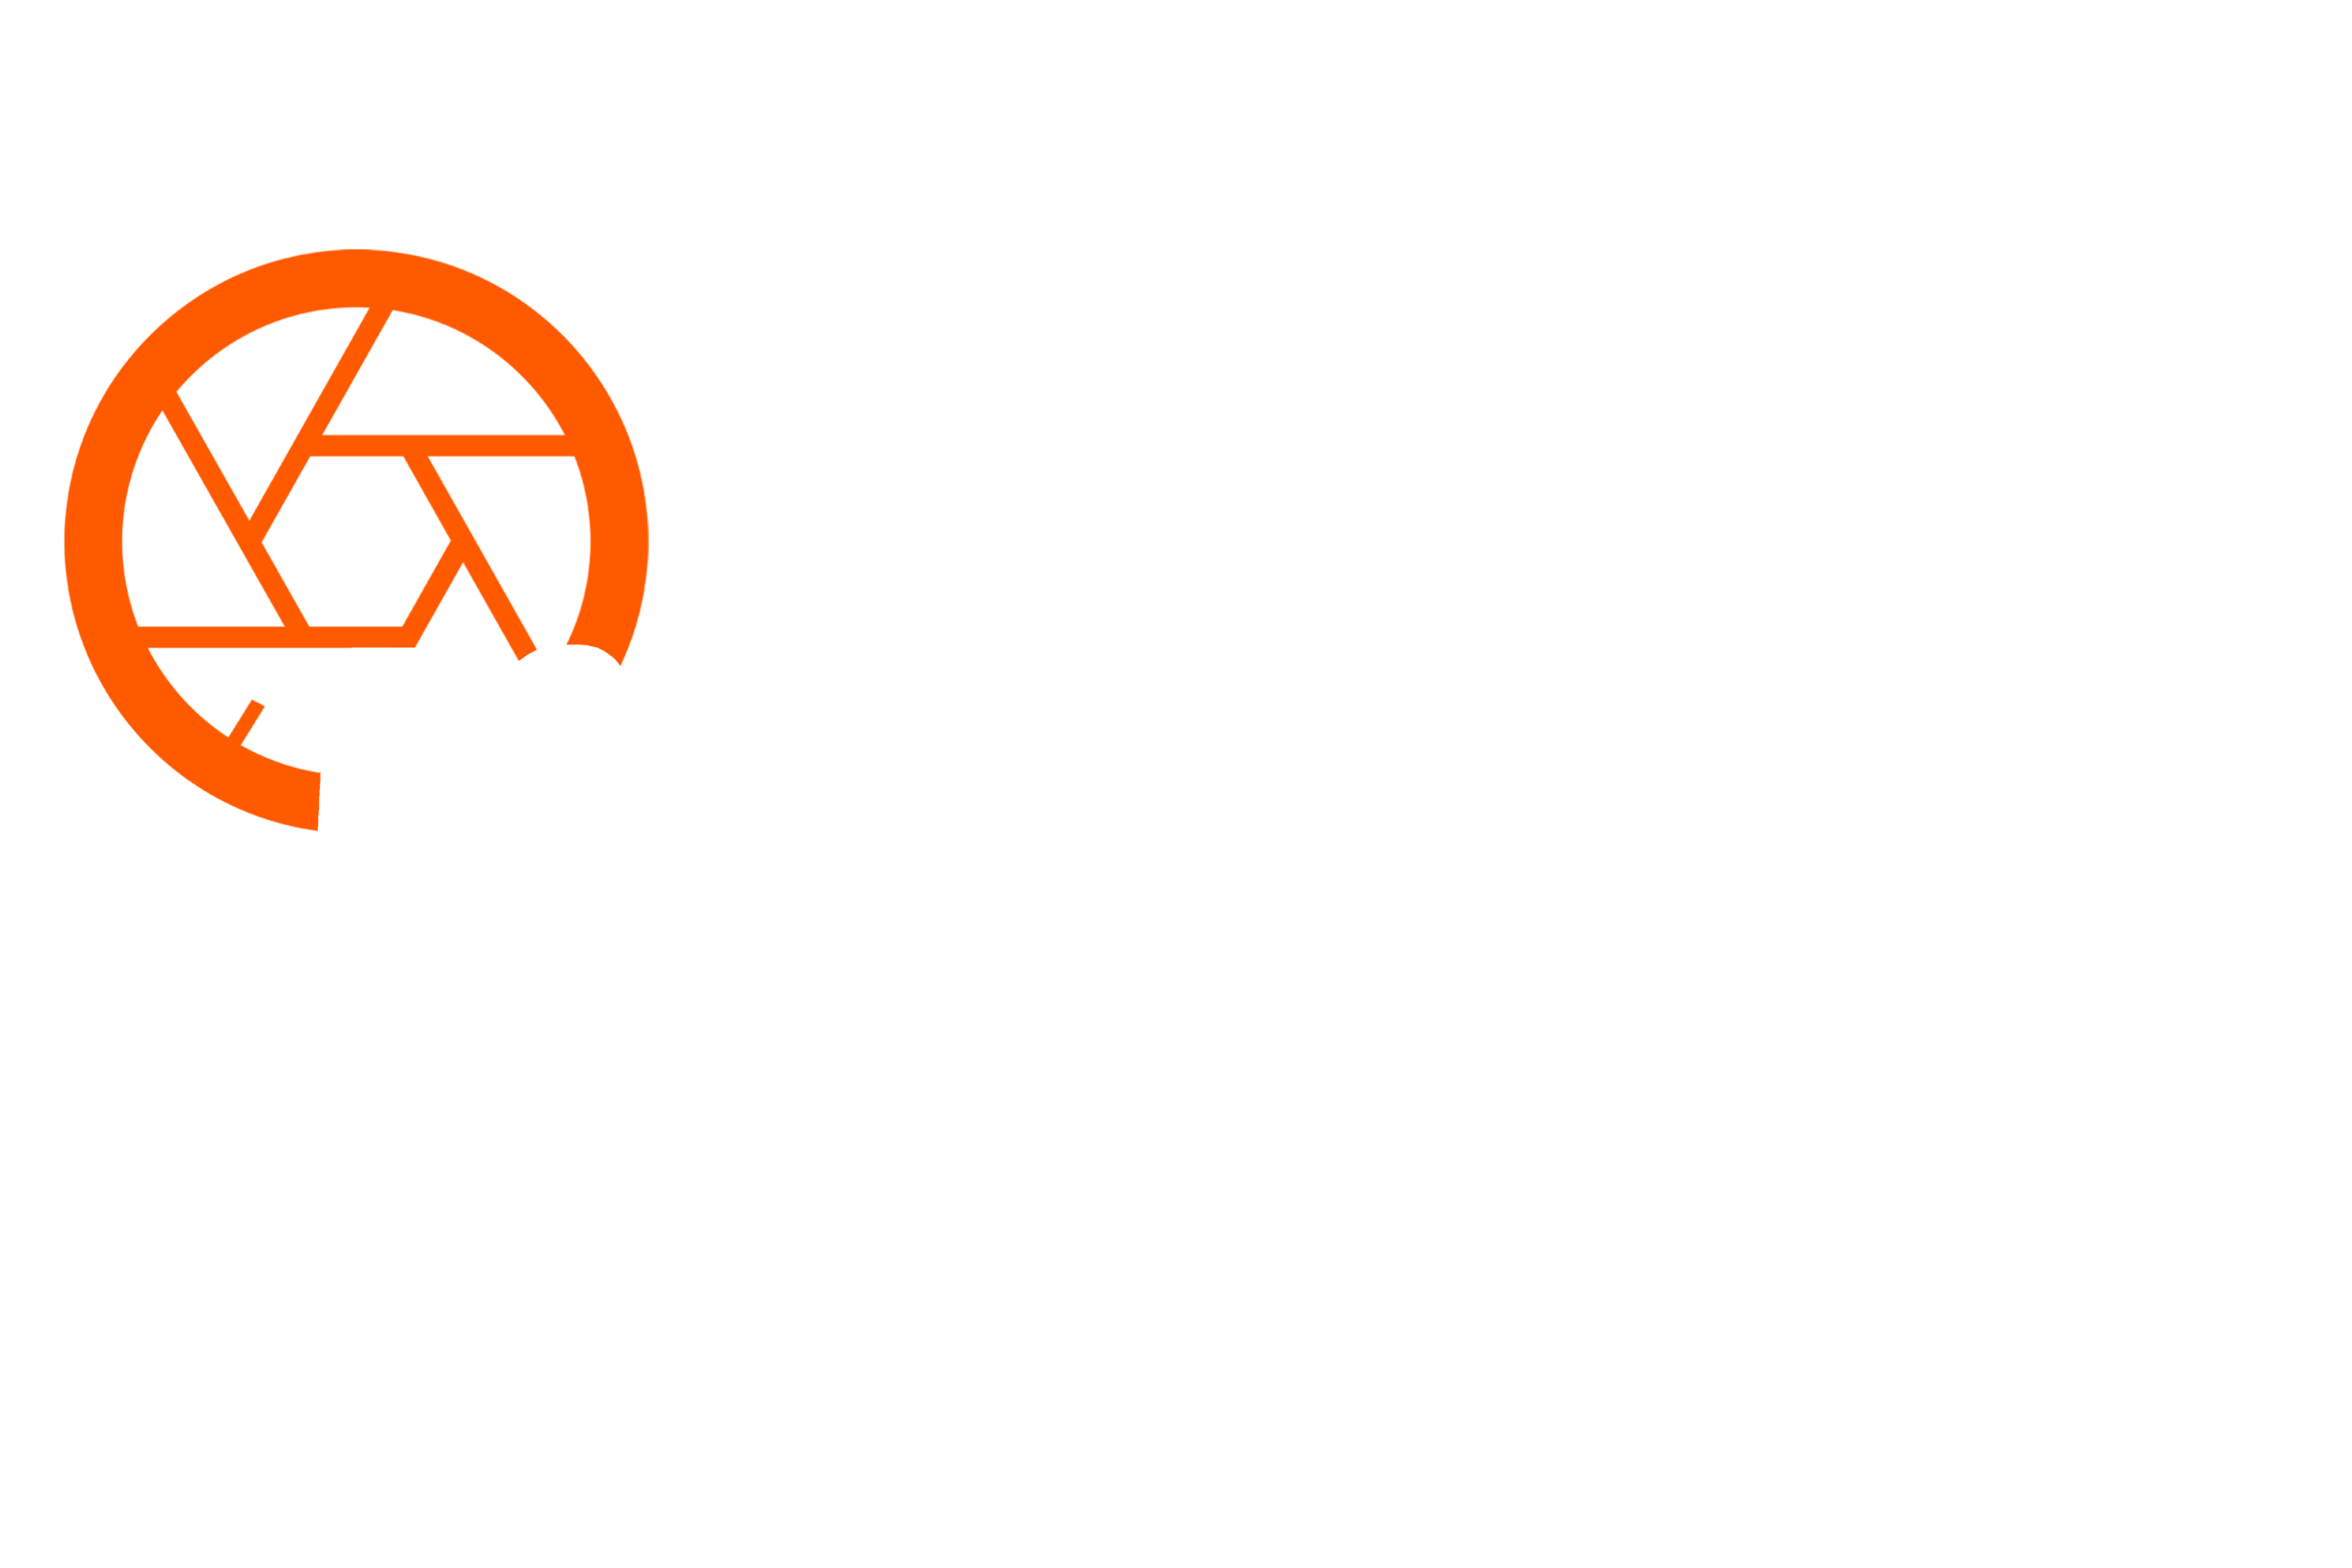 WildGlass Photo by Erick Gonzalez